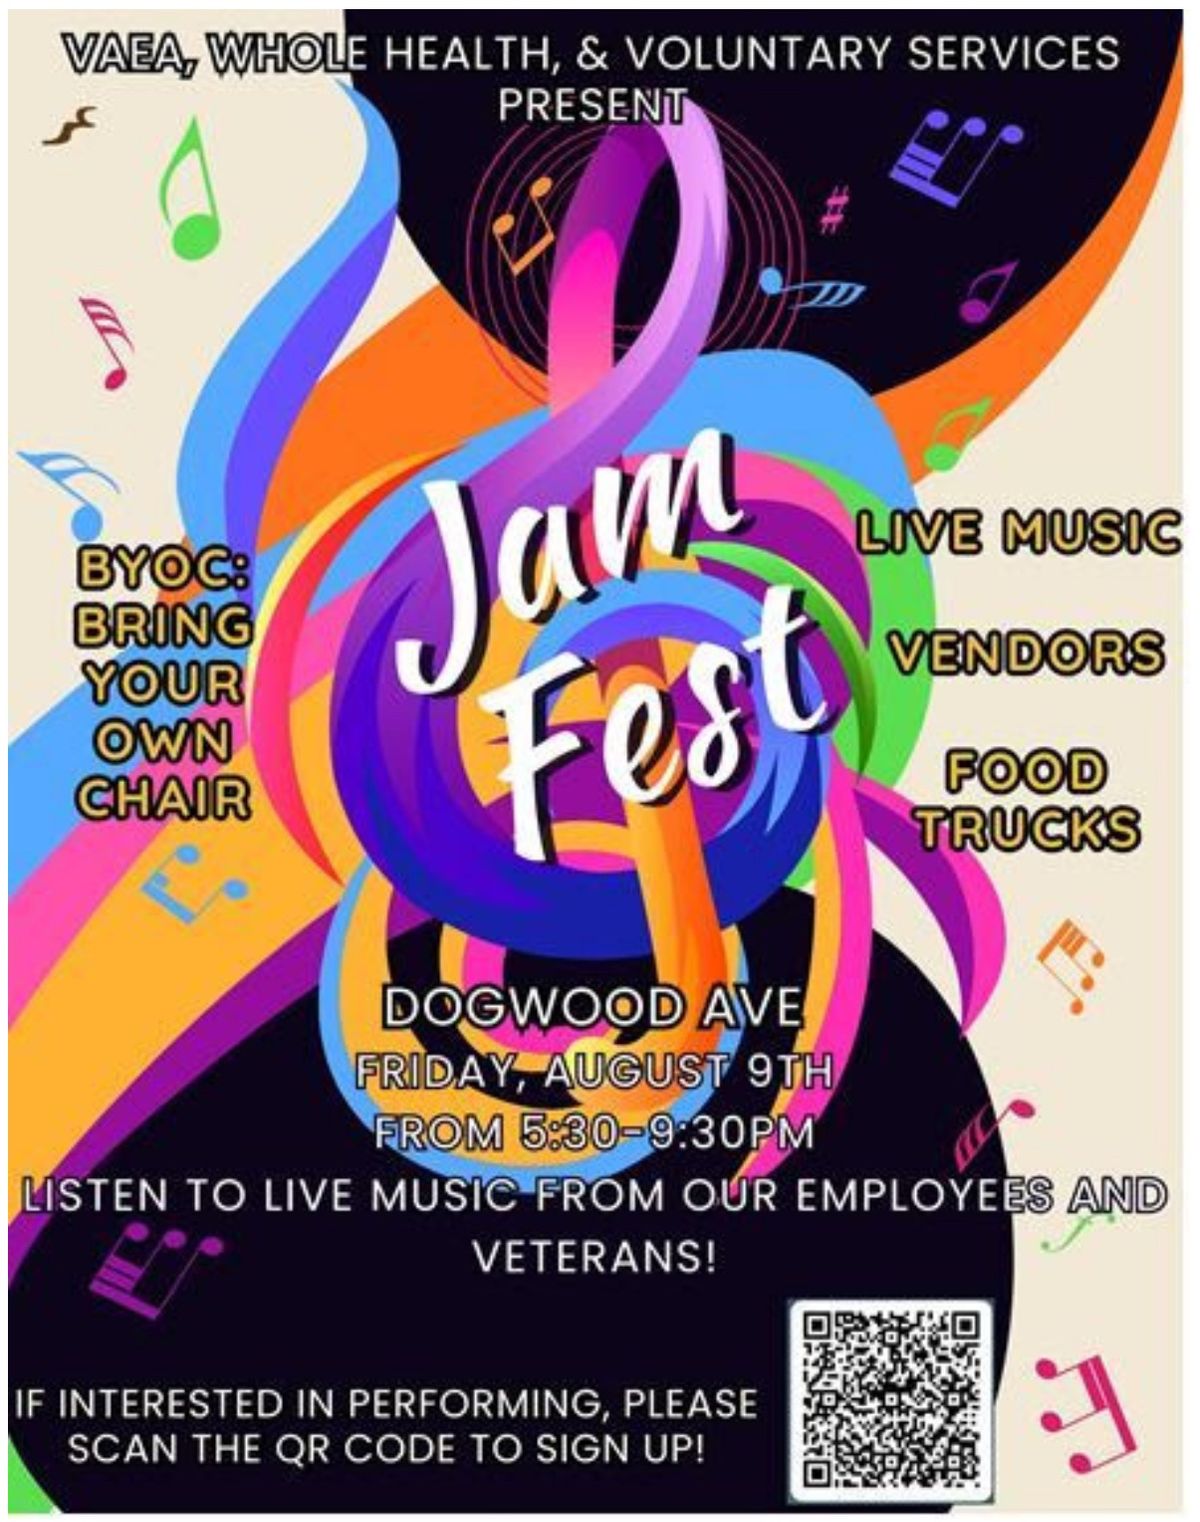 VA Medical Center Jam Fest for Veterans & Families